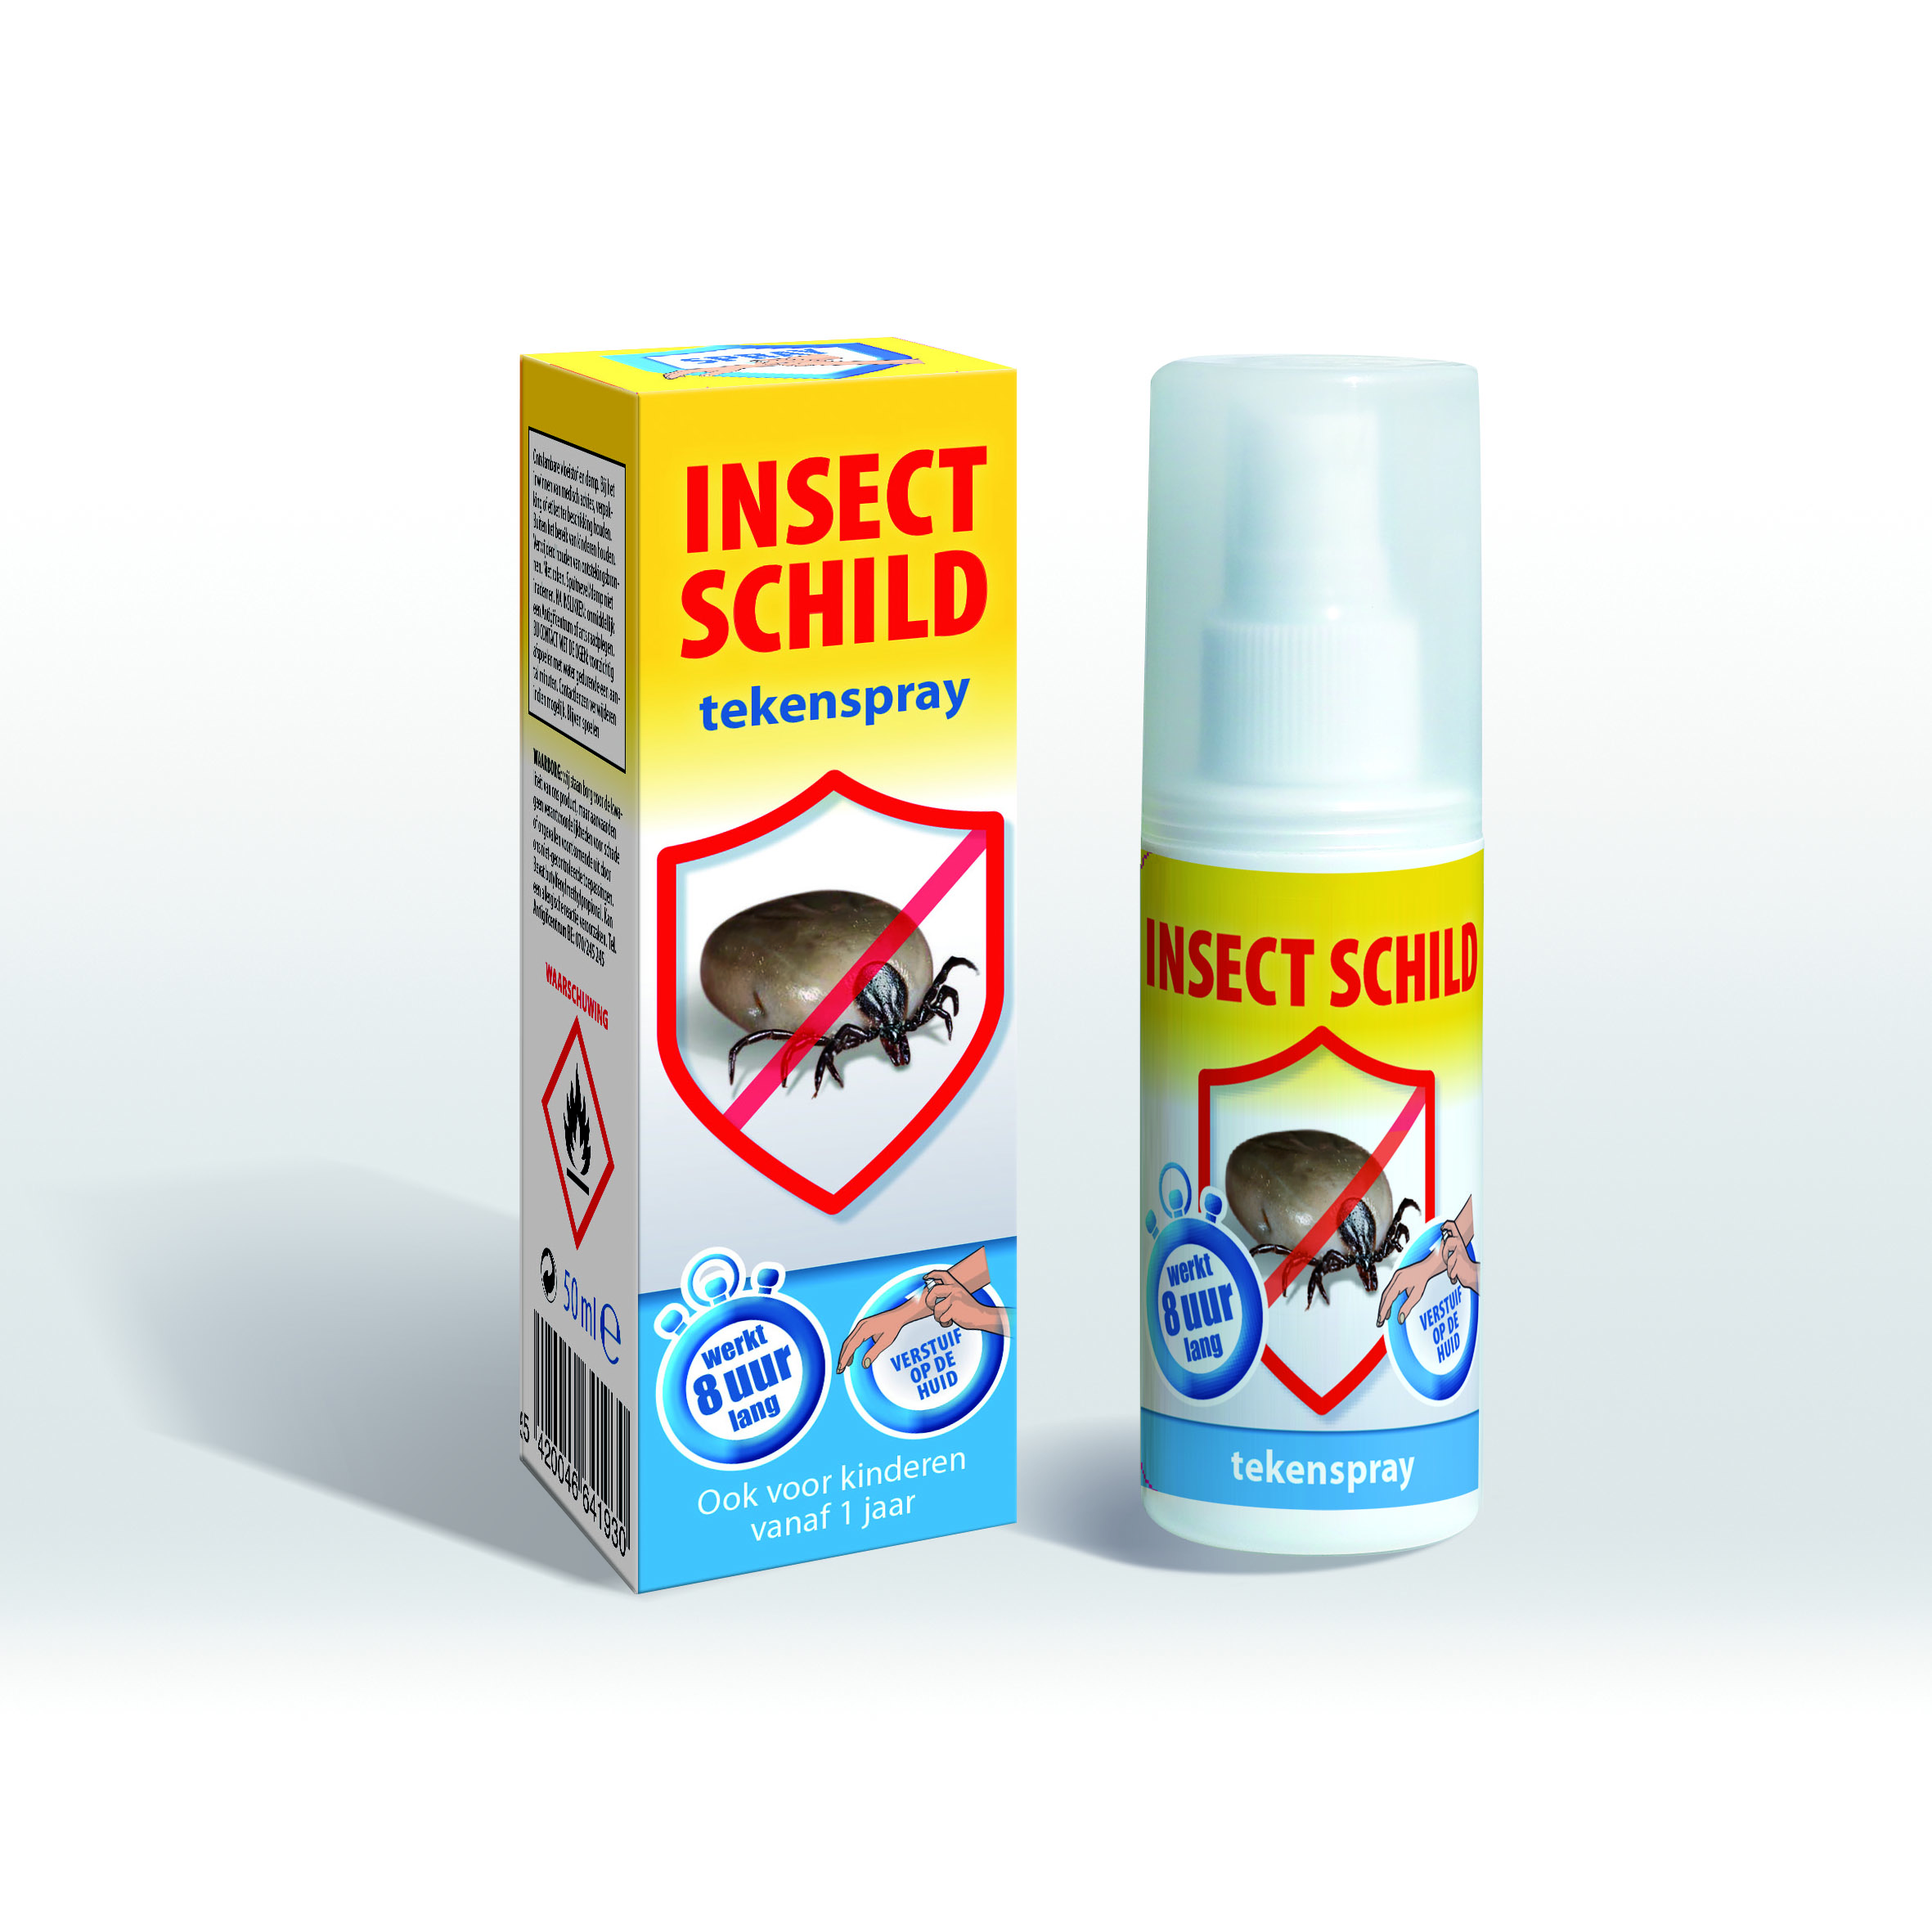 BSI Insect Schild Tekenspray 50 ml NL image